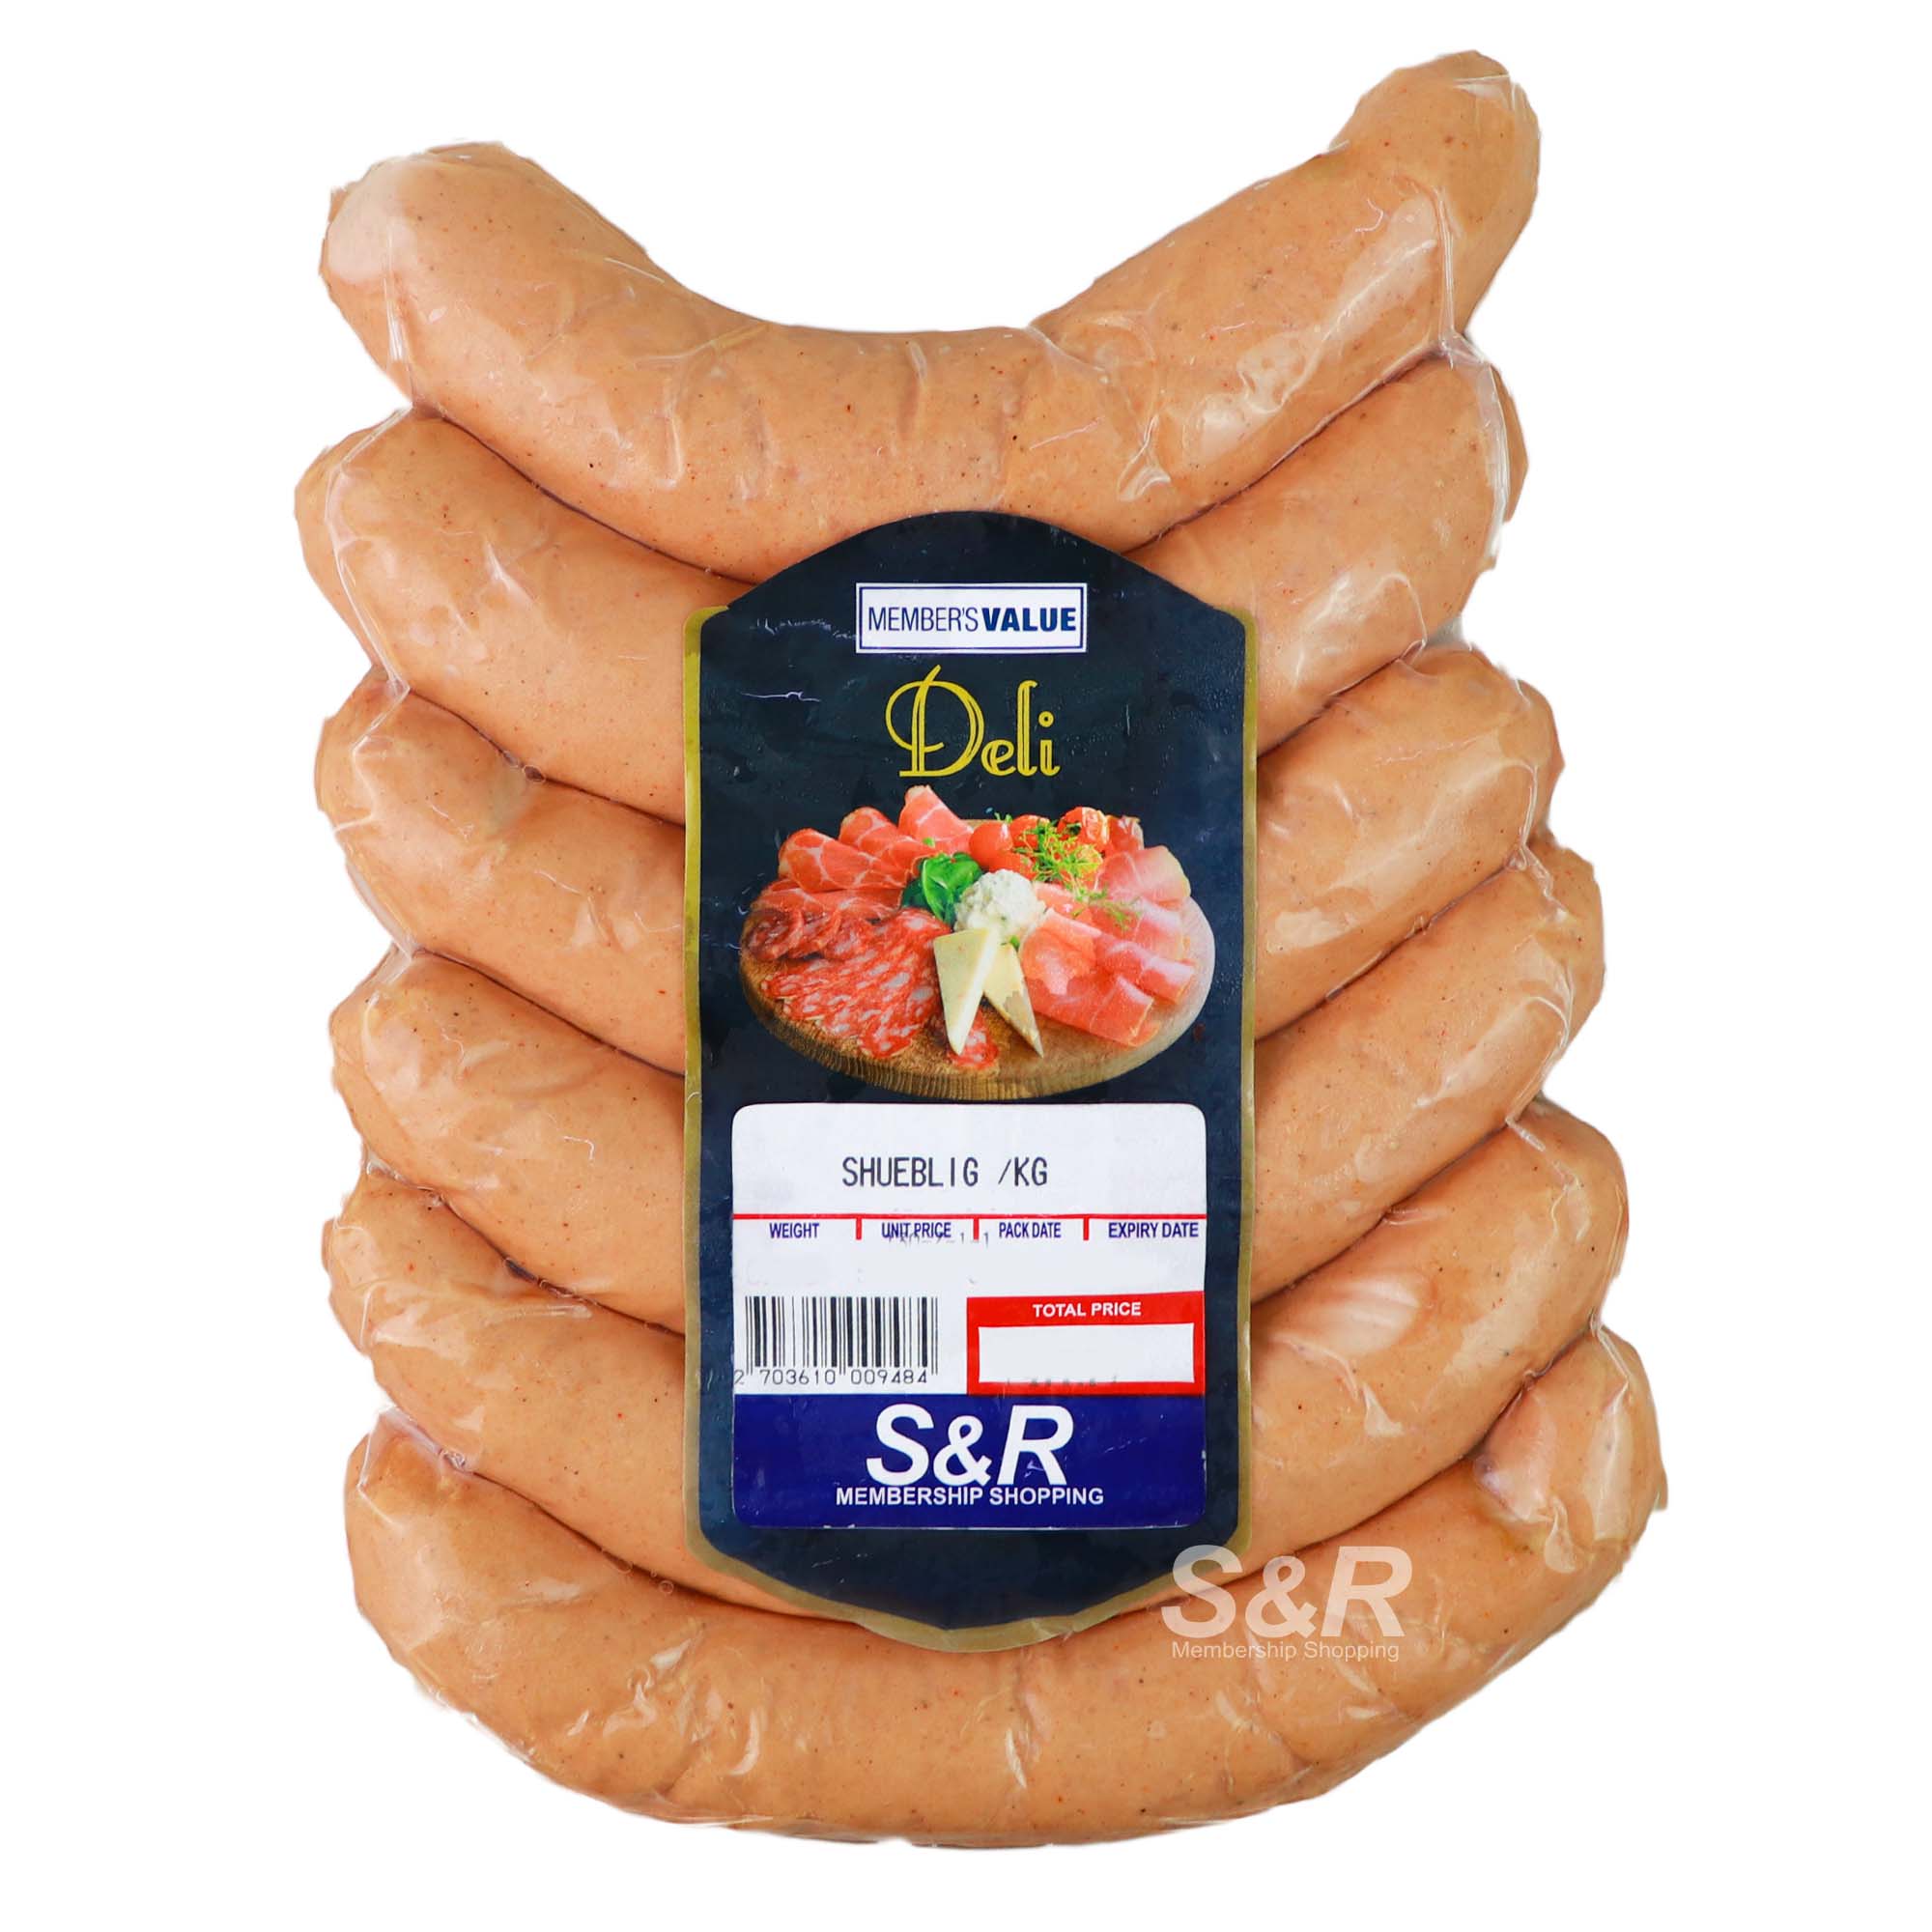 Member's Value Deli Schublig Sausages approx. 1kg